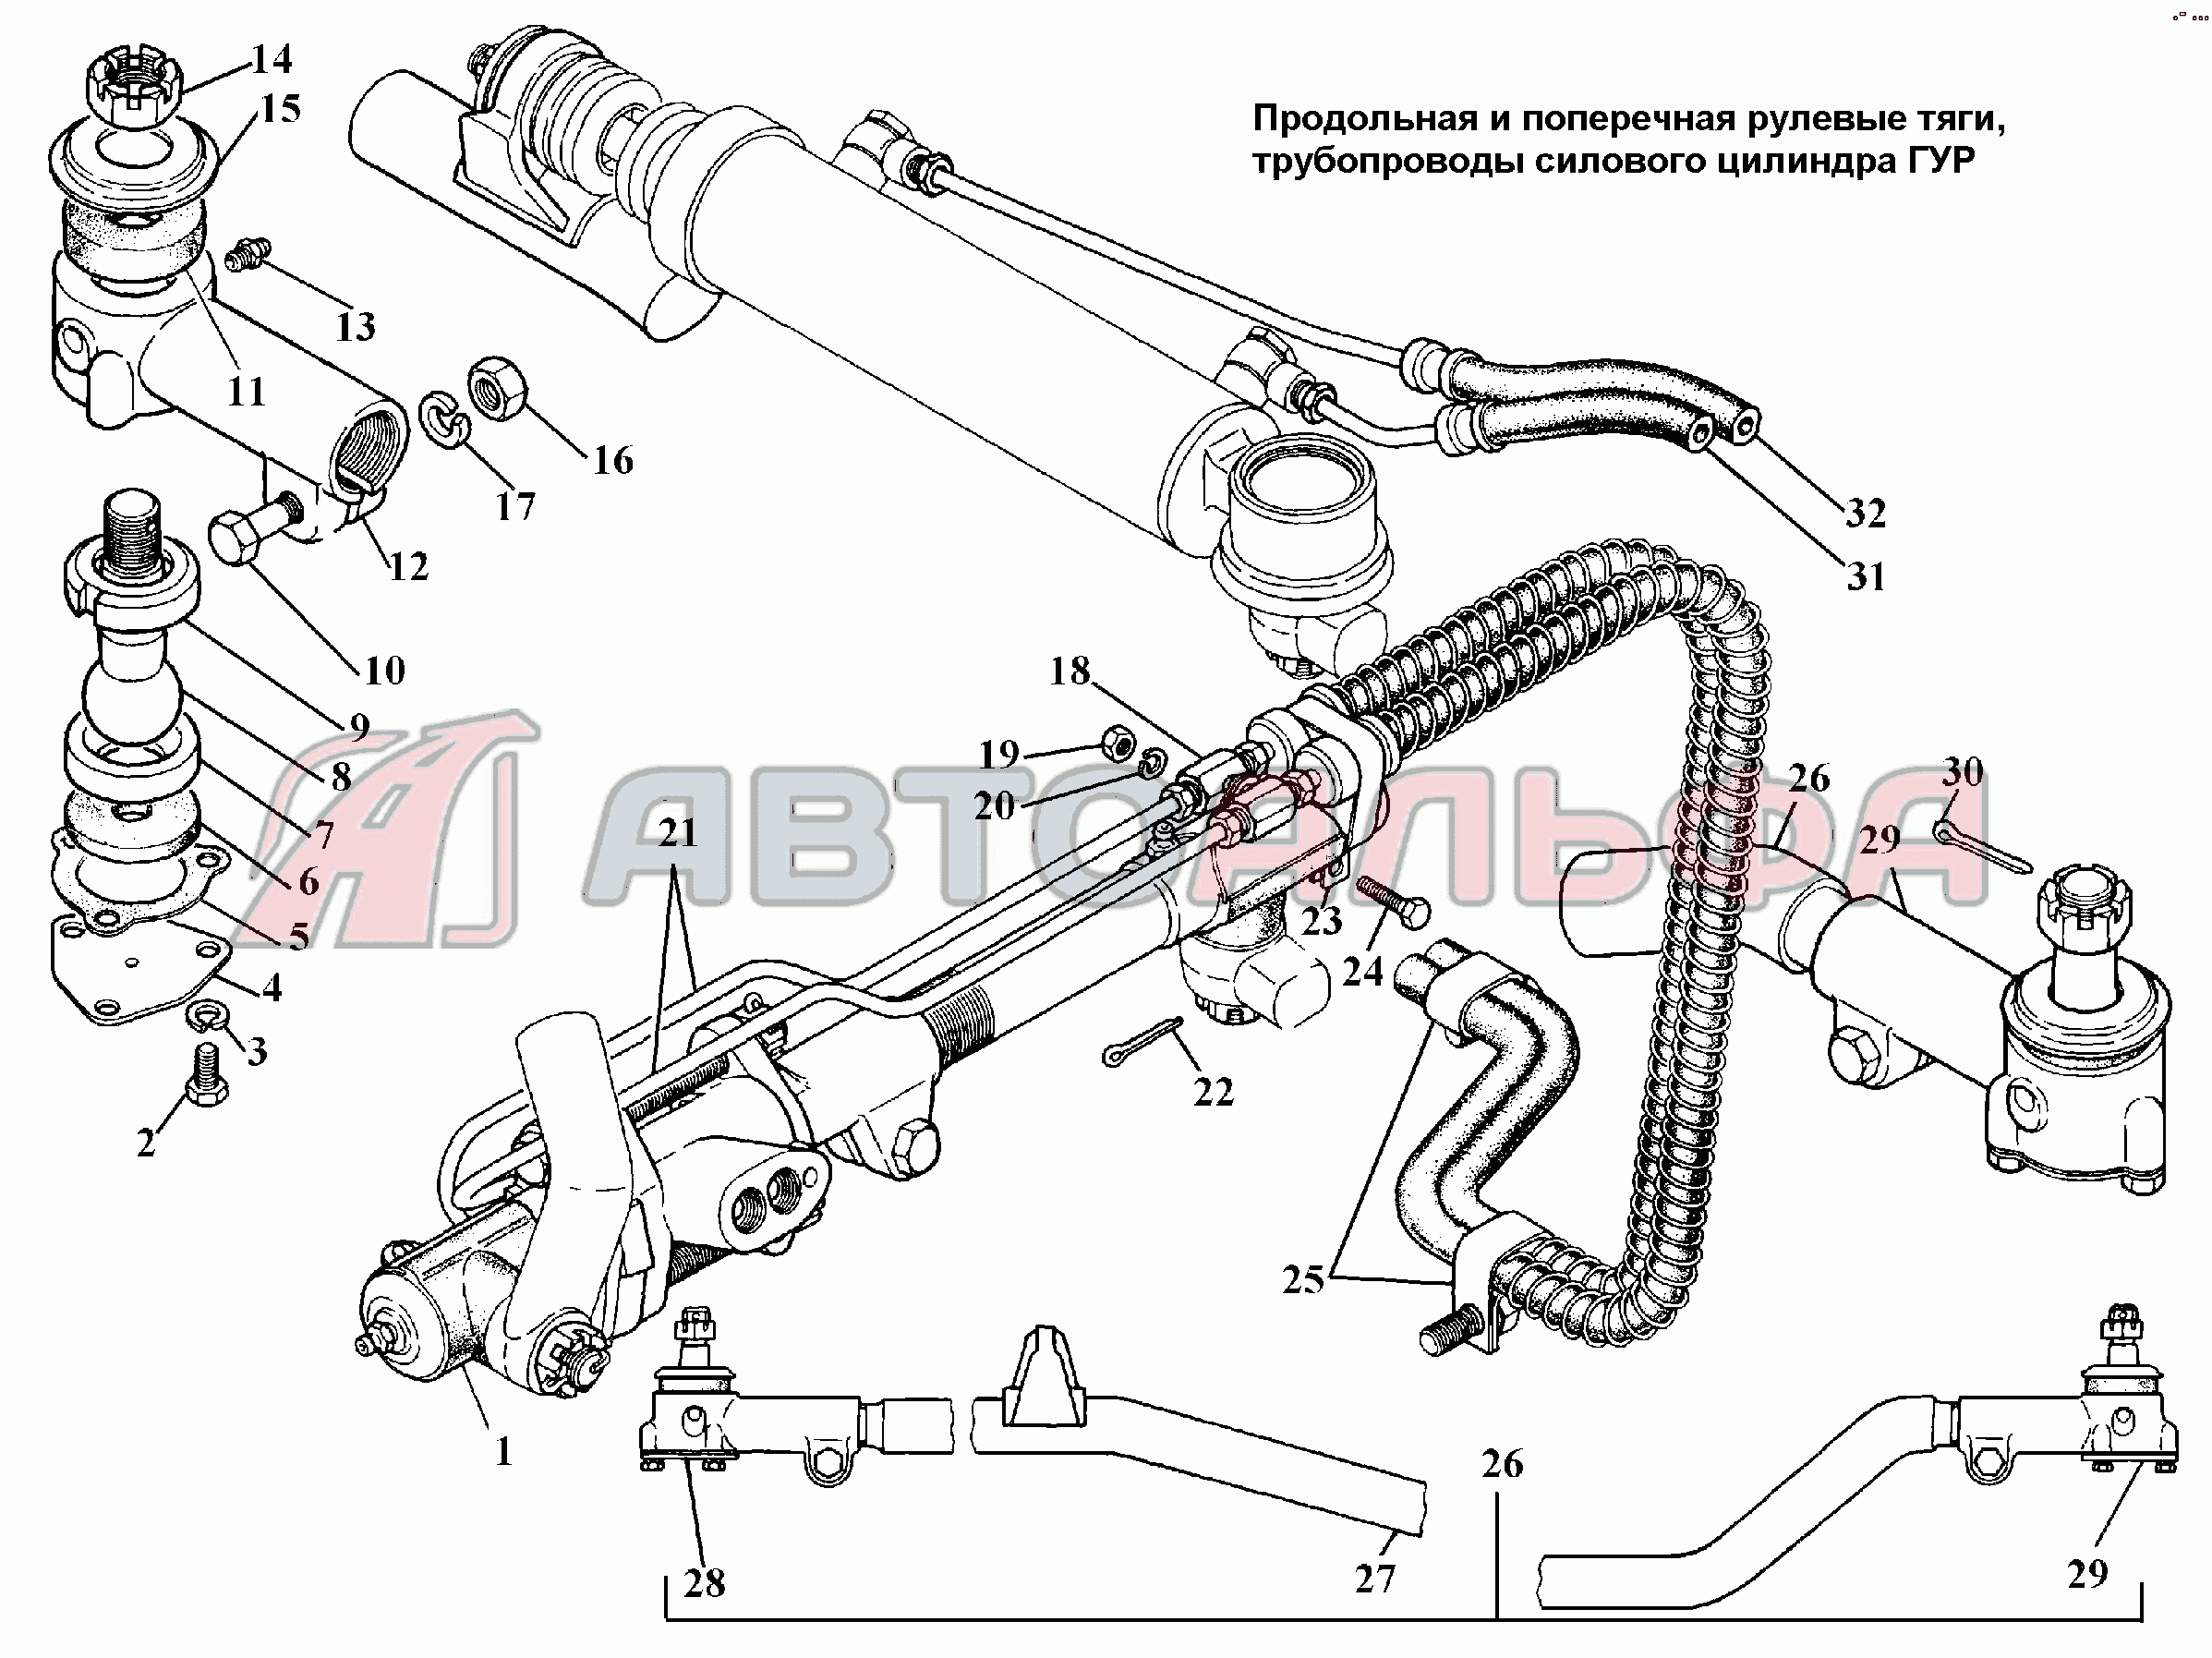 Рулевые тяги, трубопроводы силового цилиндра ГУР ГАЗ 3308, каталог 2002 г.